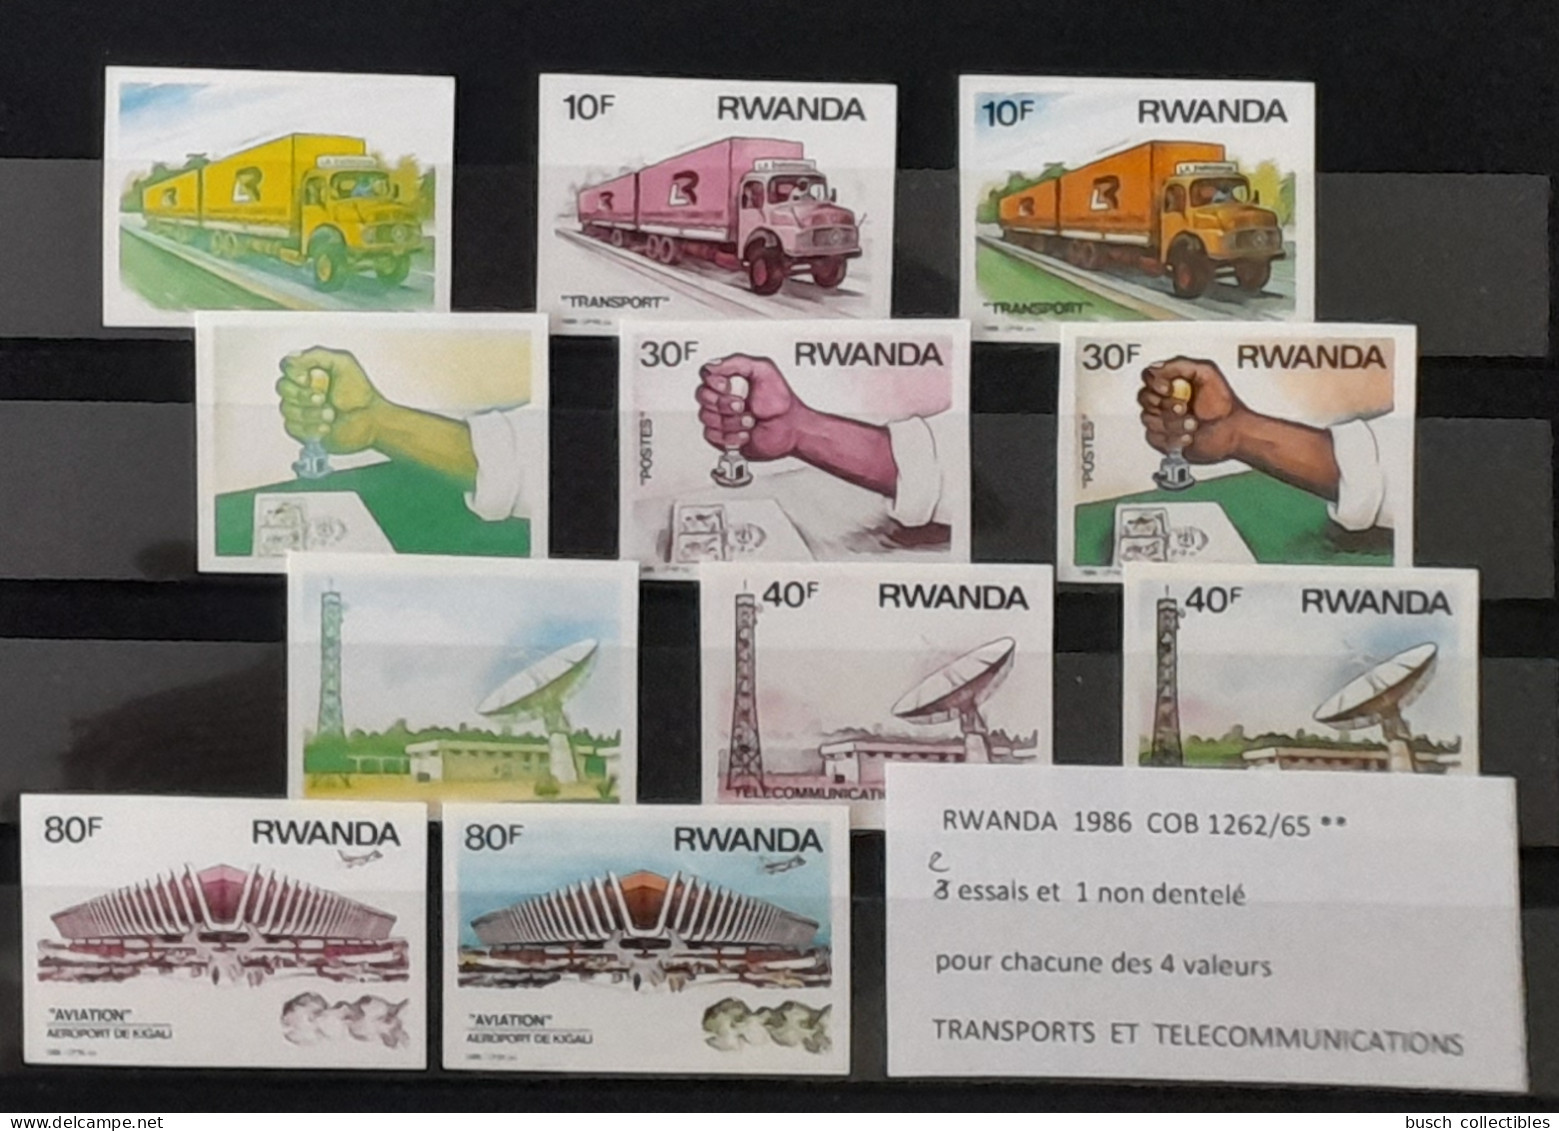 Rwanda 1986 COB 1262 - 1265 Color Proofs Essais Couleur IMPERF ND Transports Télécommunications Truck Airplane Camion - Aviones